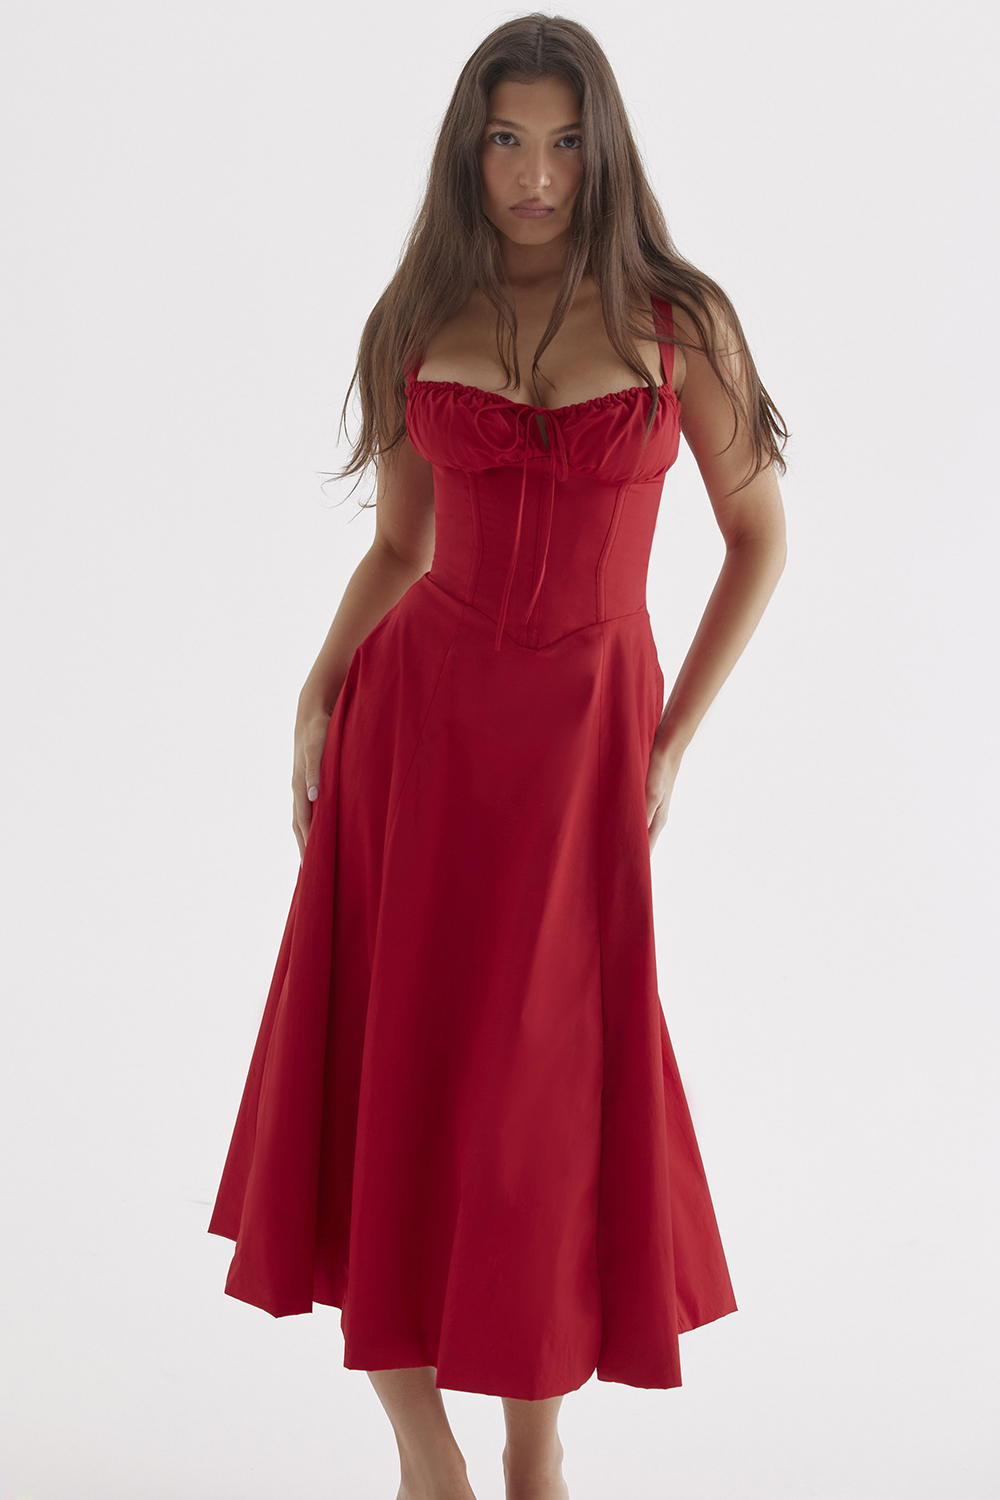 Clothing Midi Dresses Carmen Red Rose Bustier Sundress